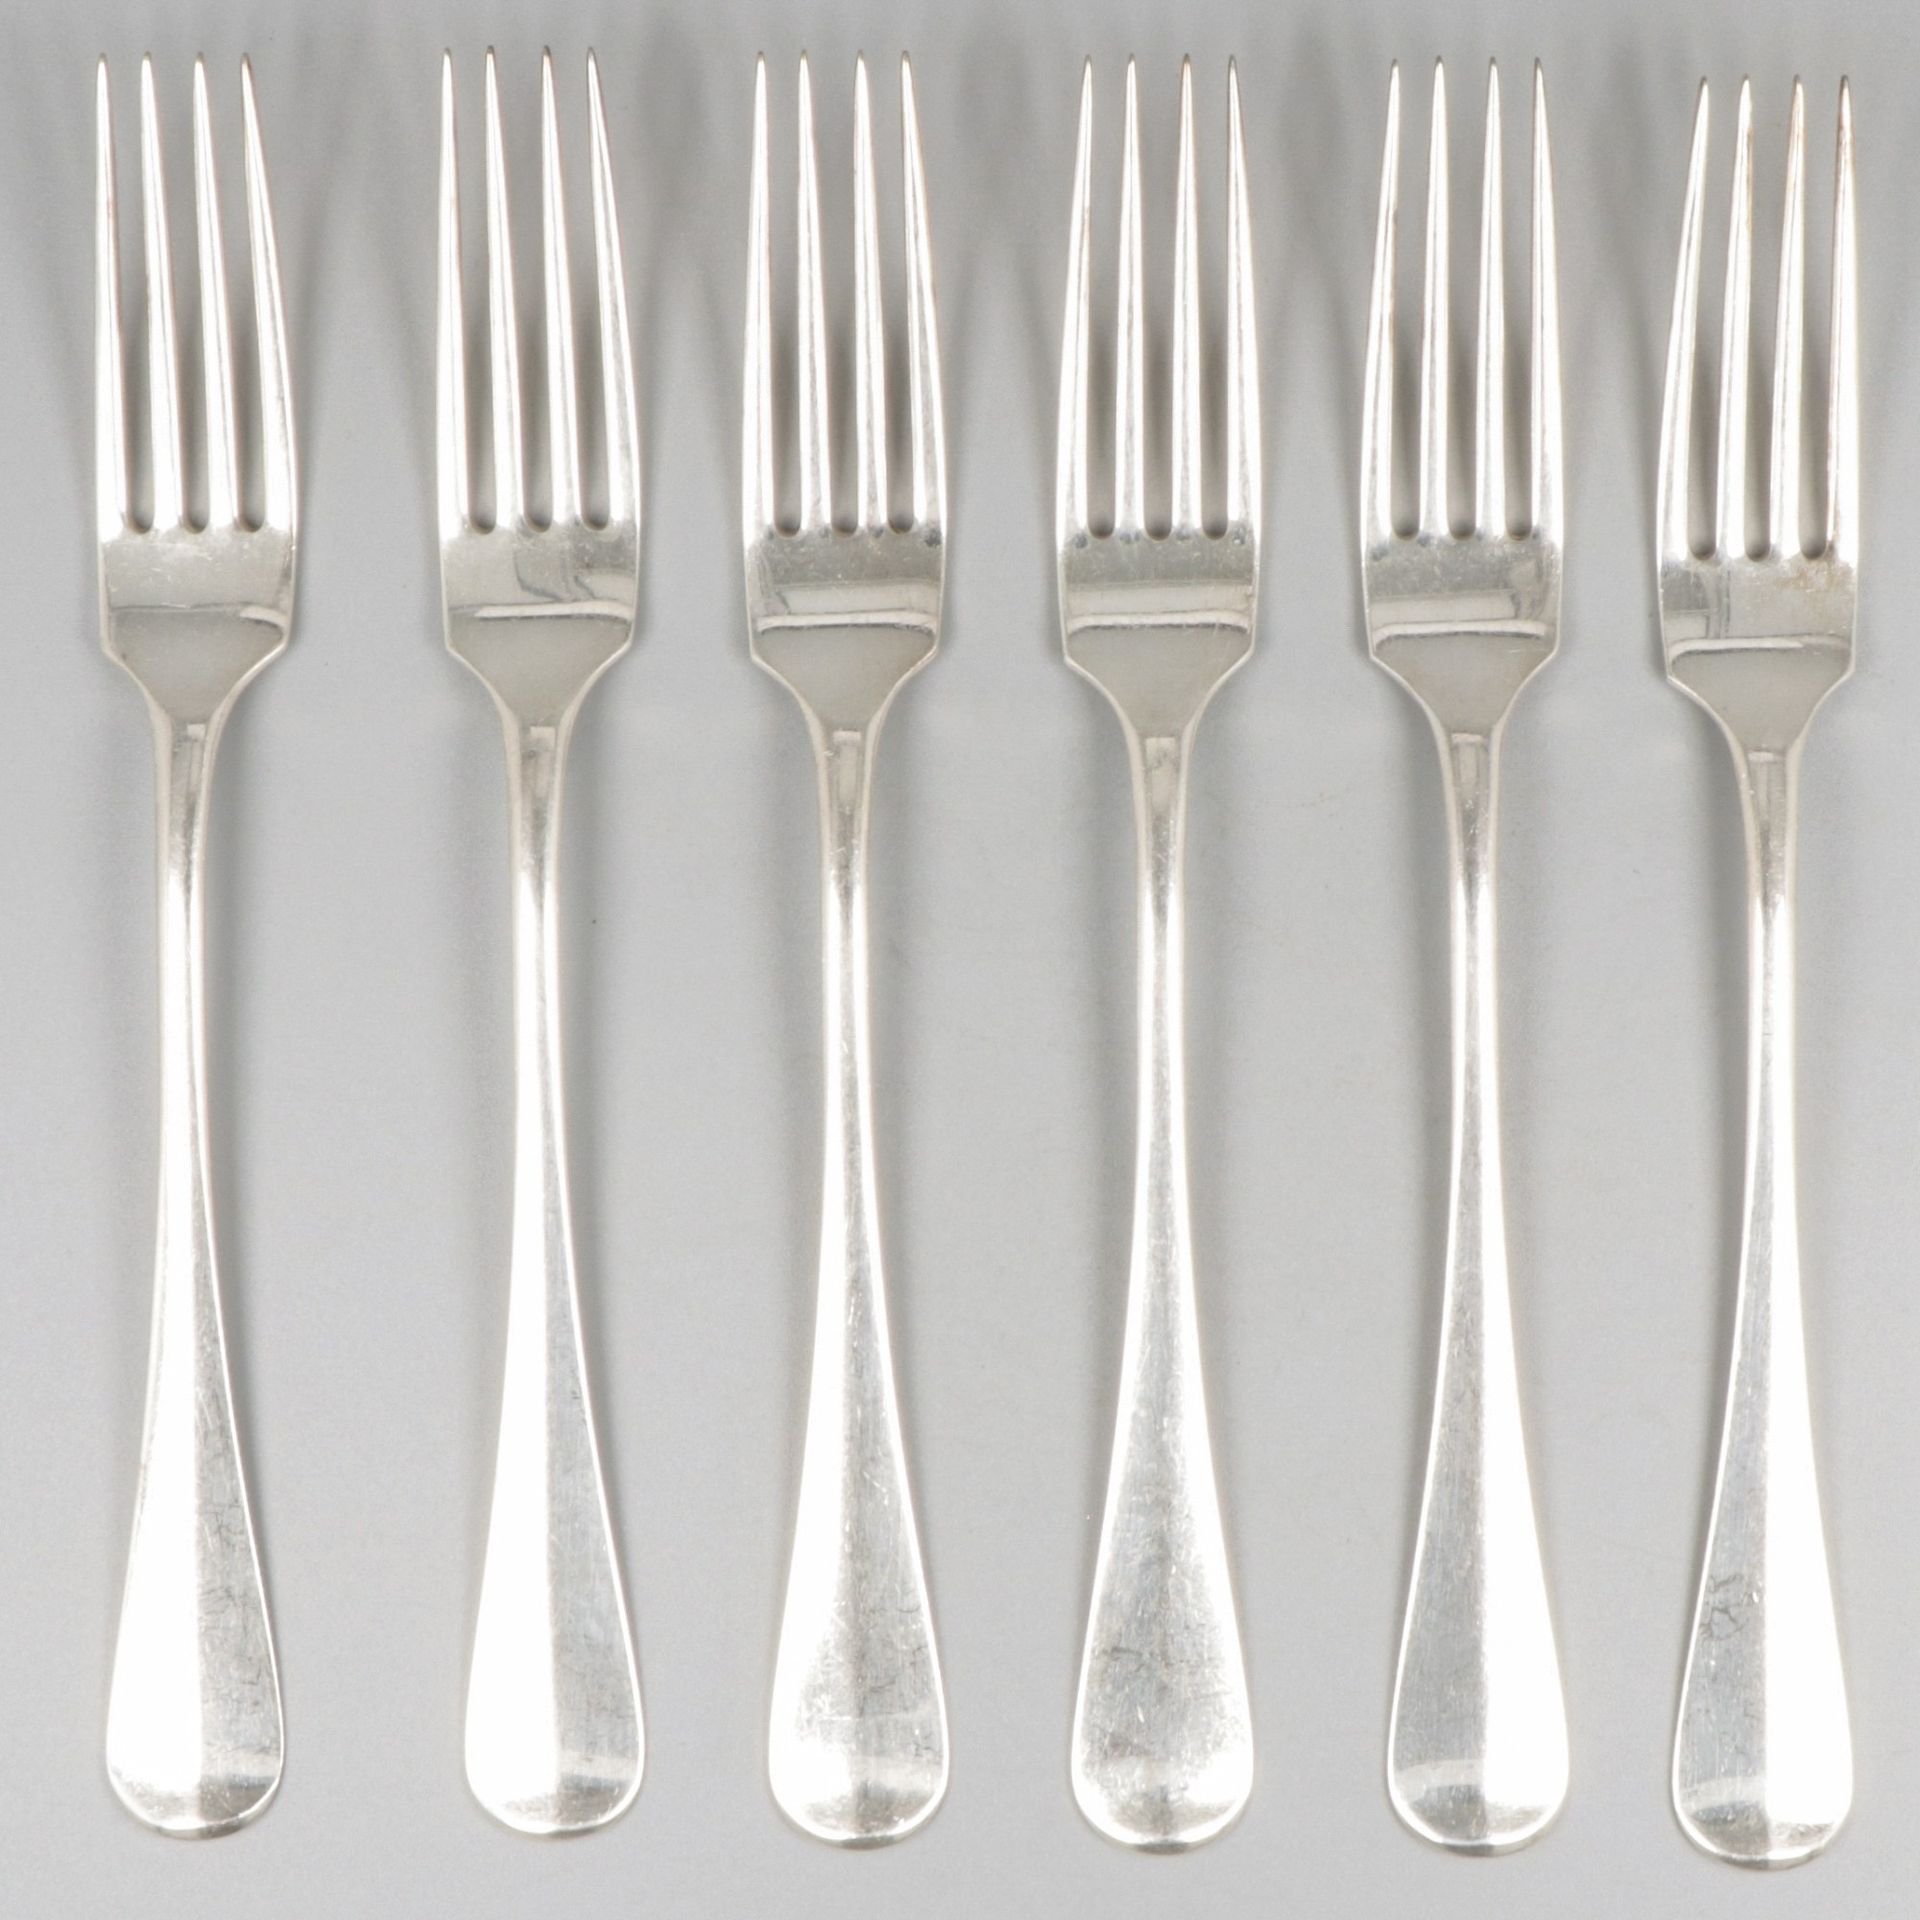 6-piece set dinner forks silver. "Hollands Glad" oder holländisch glatt. Niederl&hellip;